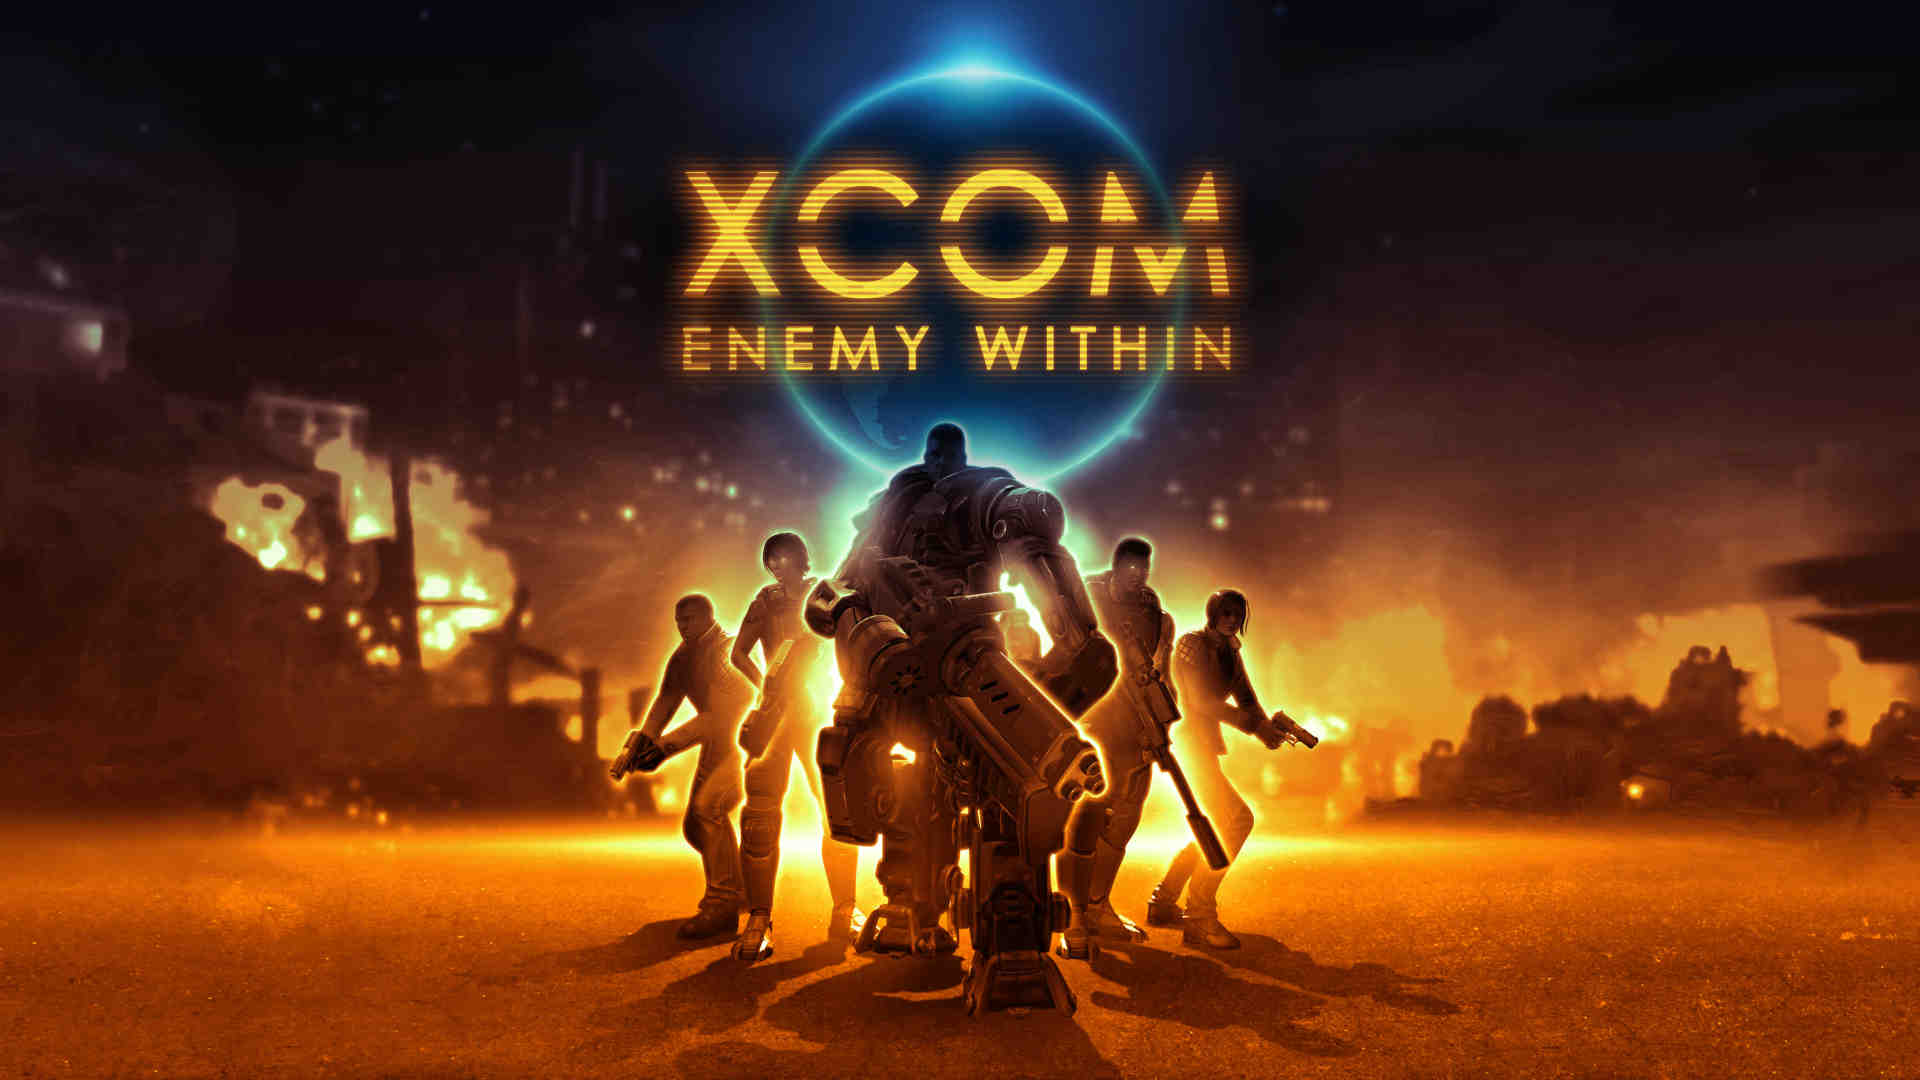 幽浮：内部敌人 XCOM: Enemy Within 的图片